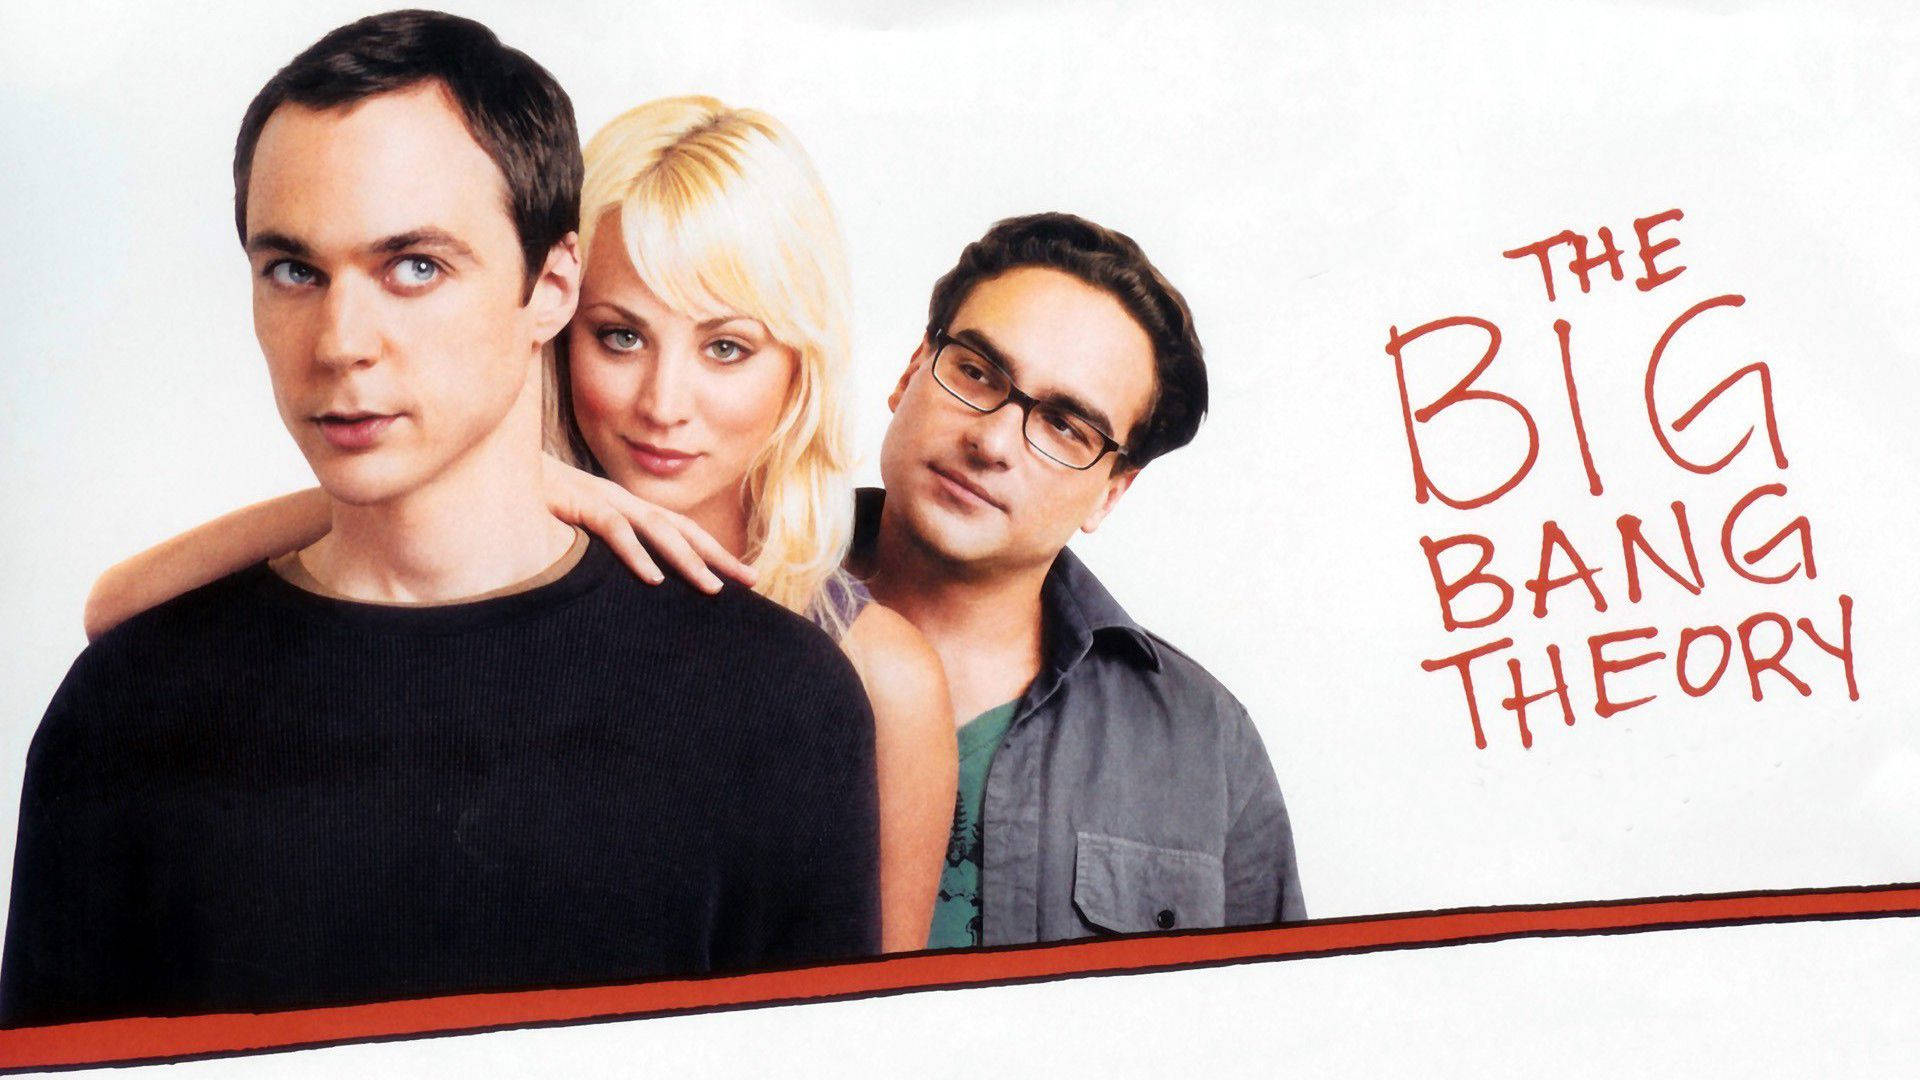 The Big Bang Theory Star Poster Wallpaper